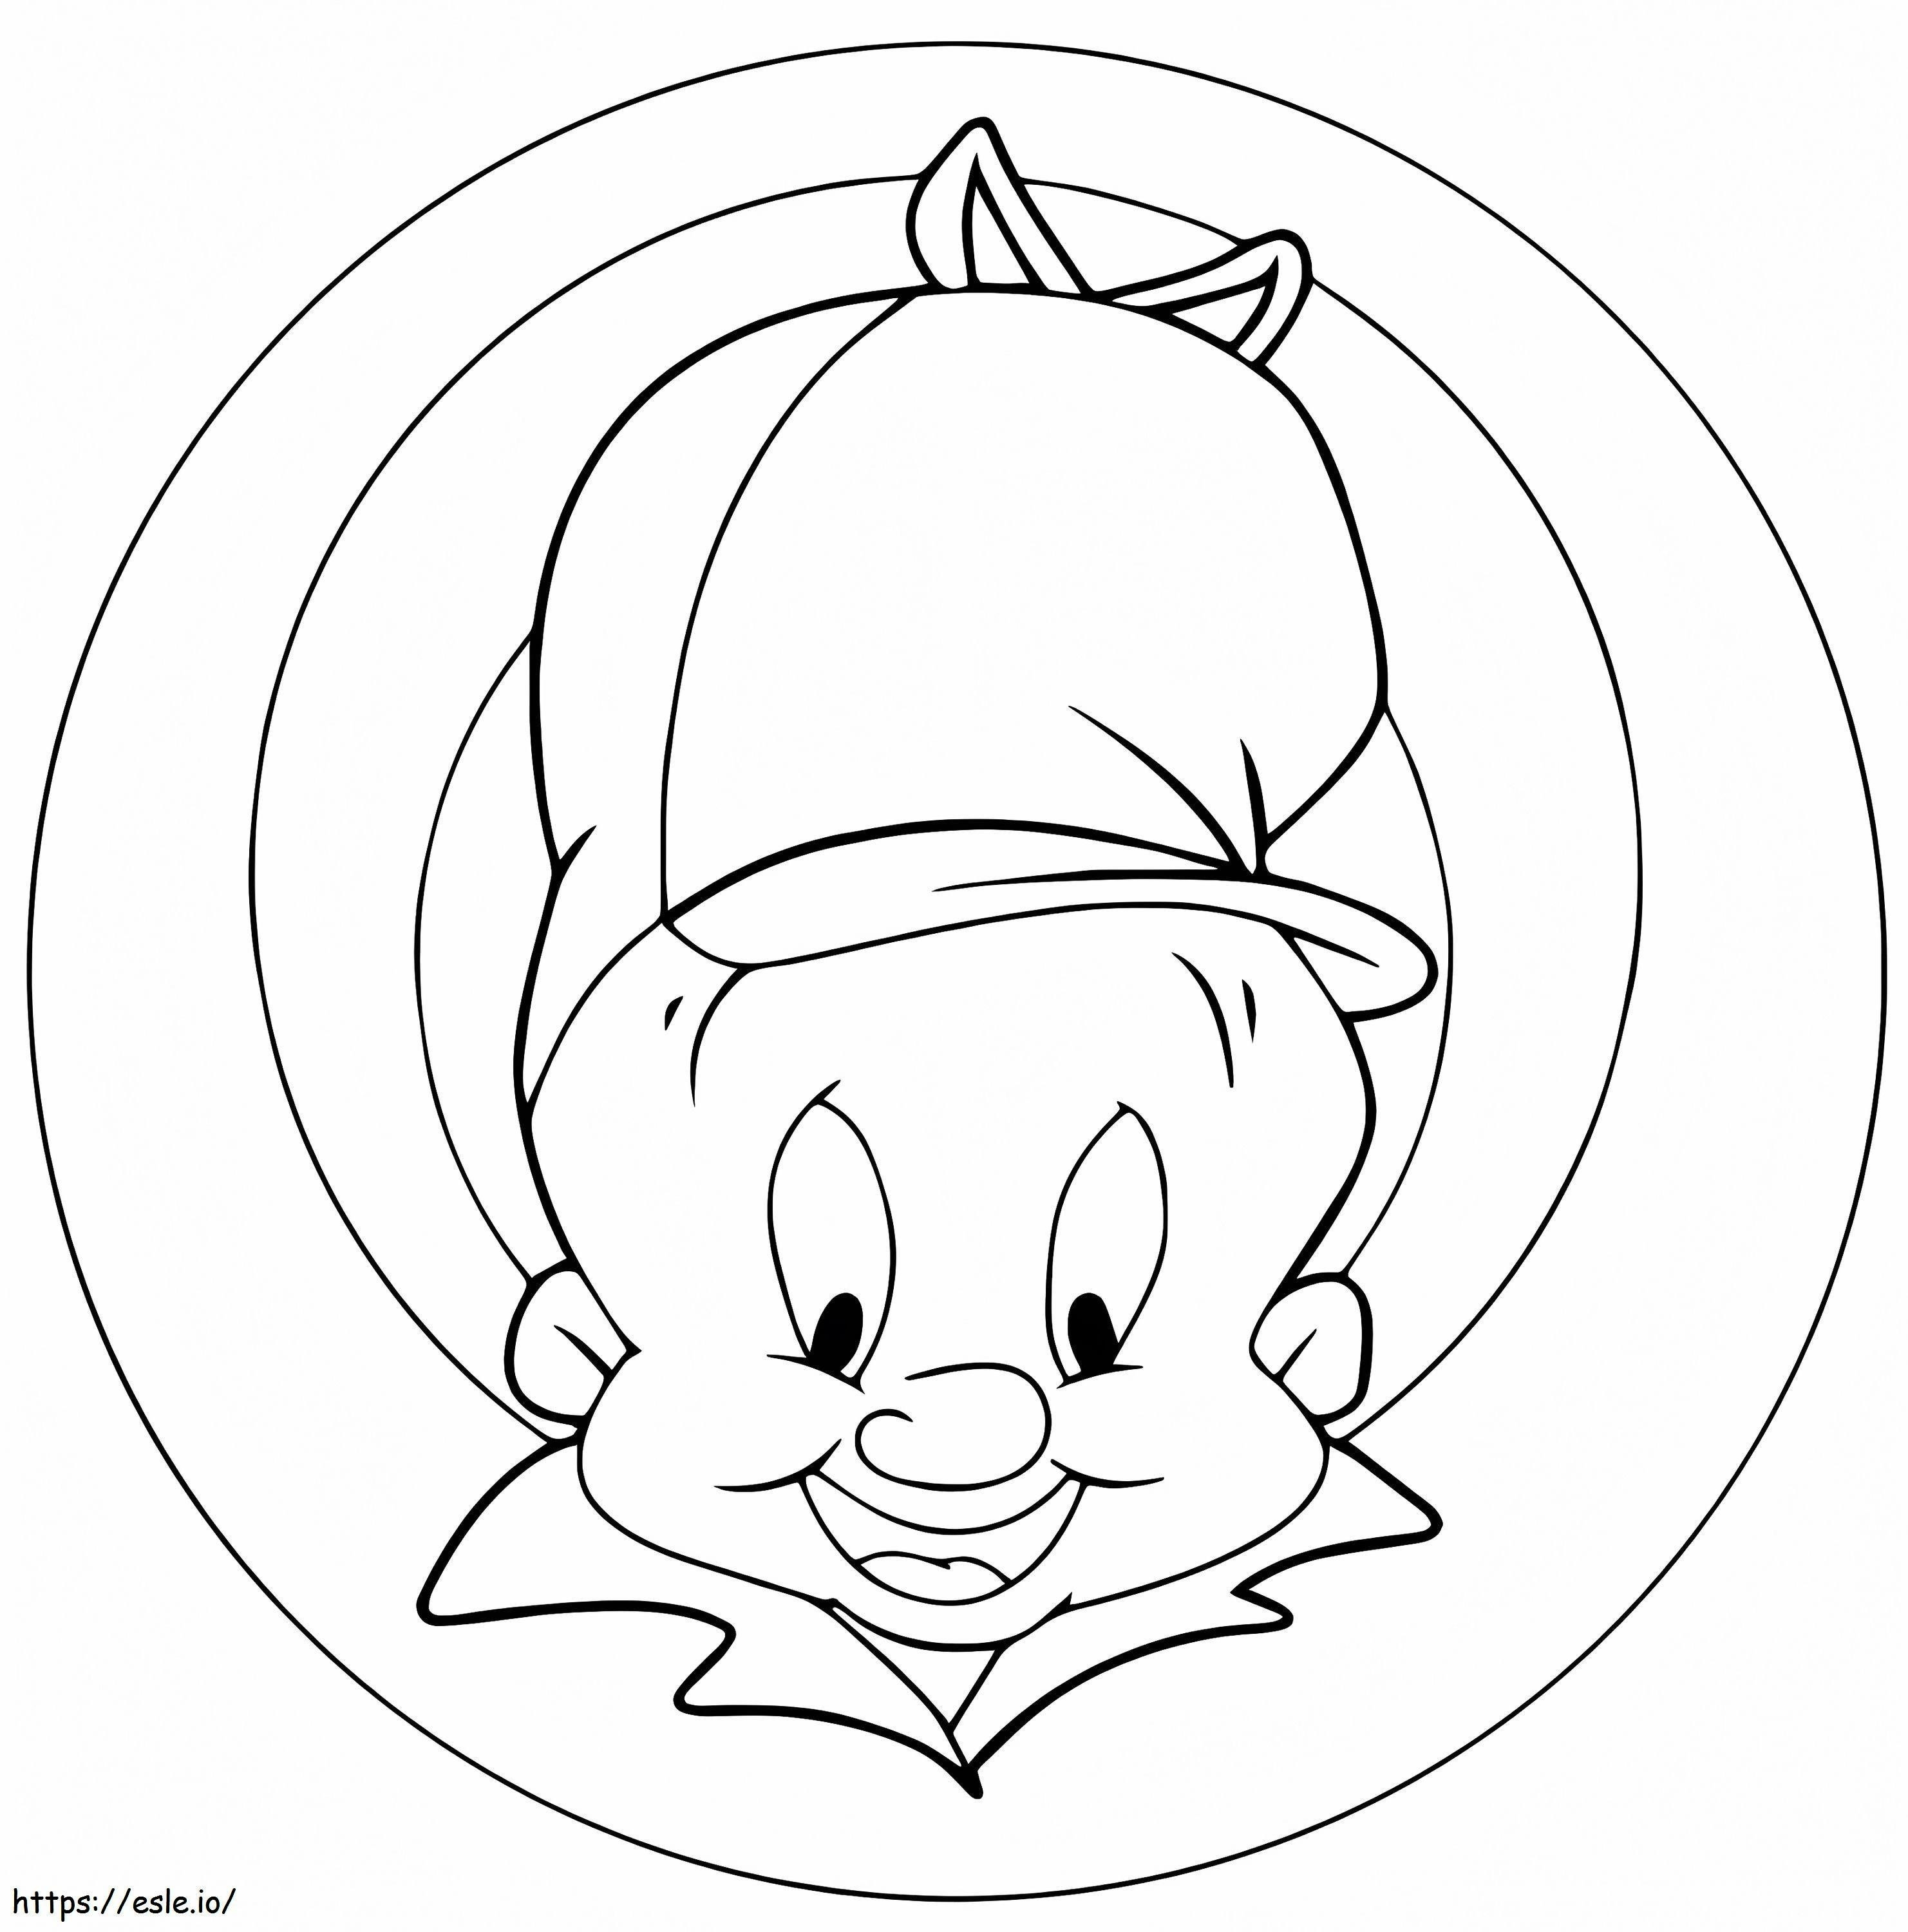 Looney Tunes Elmer Fudd boyama